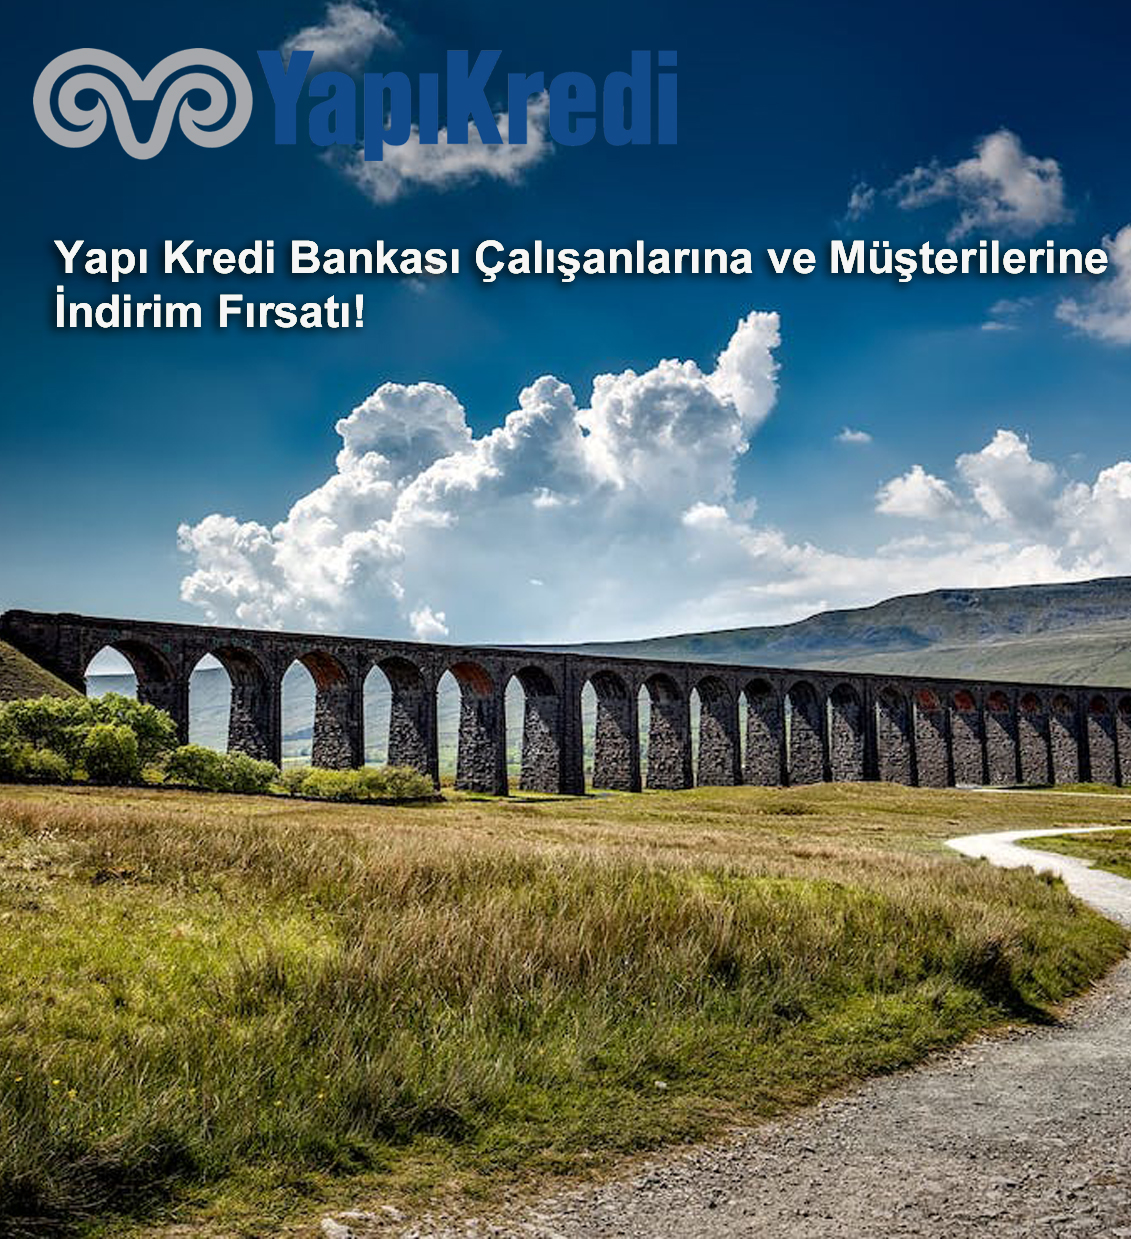 Rabattmöglichkeit für Mitarbeiter und Kunden der Yapı Kredi Bank!